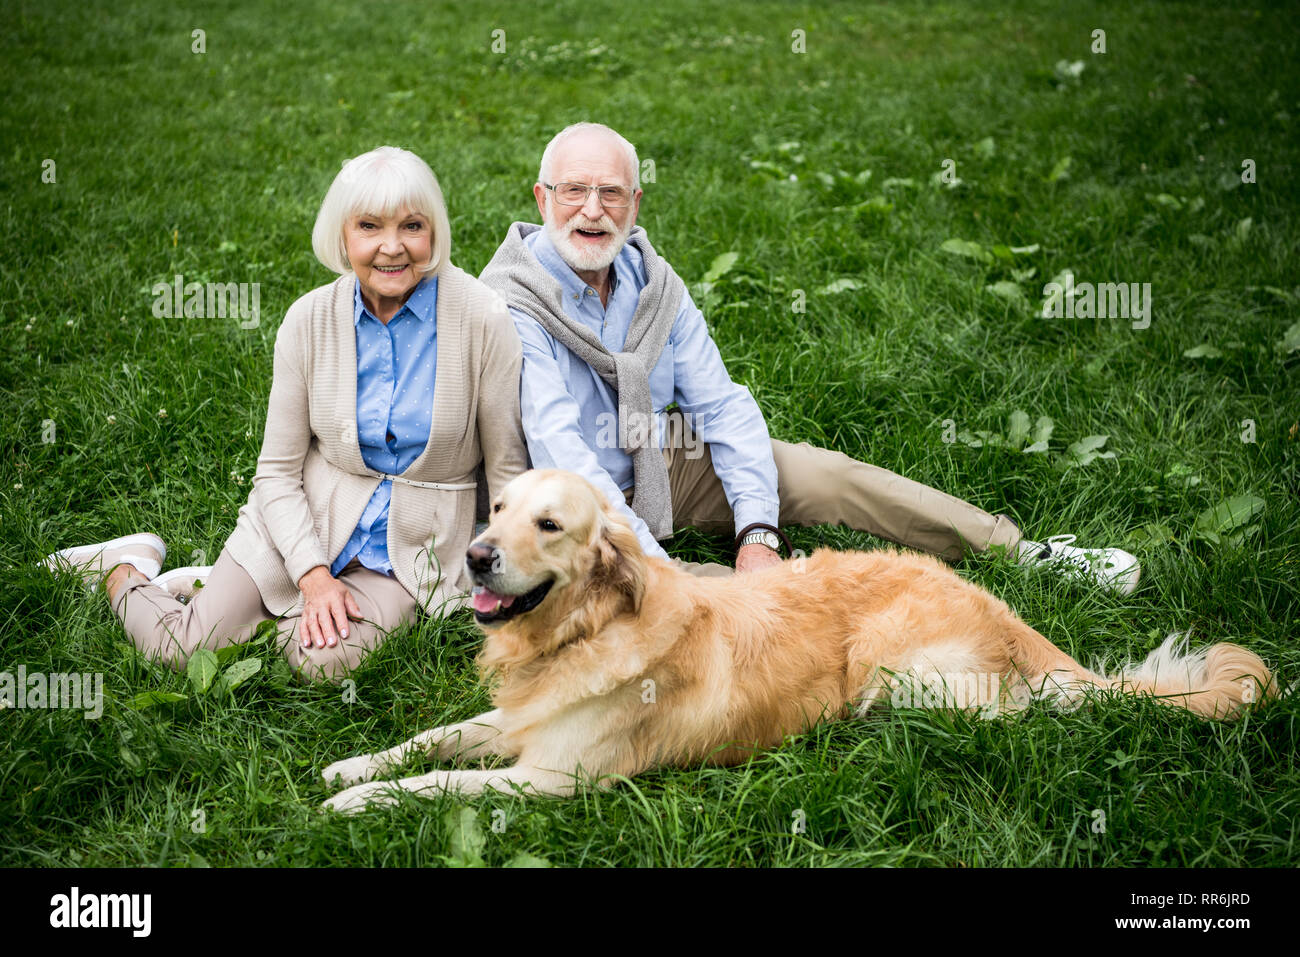 Felice coppia senior con adorabili golden retriever dog sitter su prato verde Foto Stock